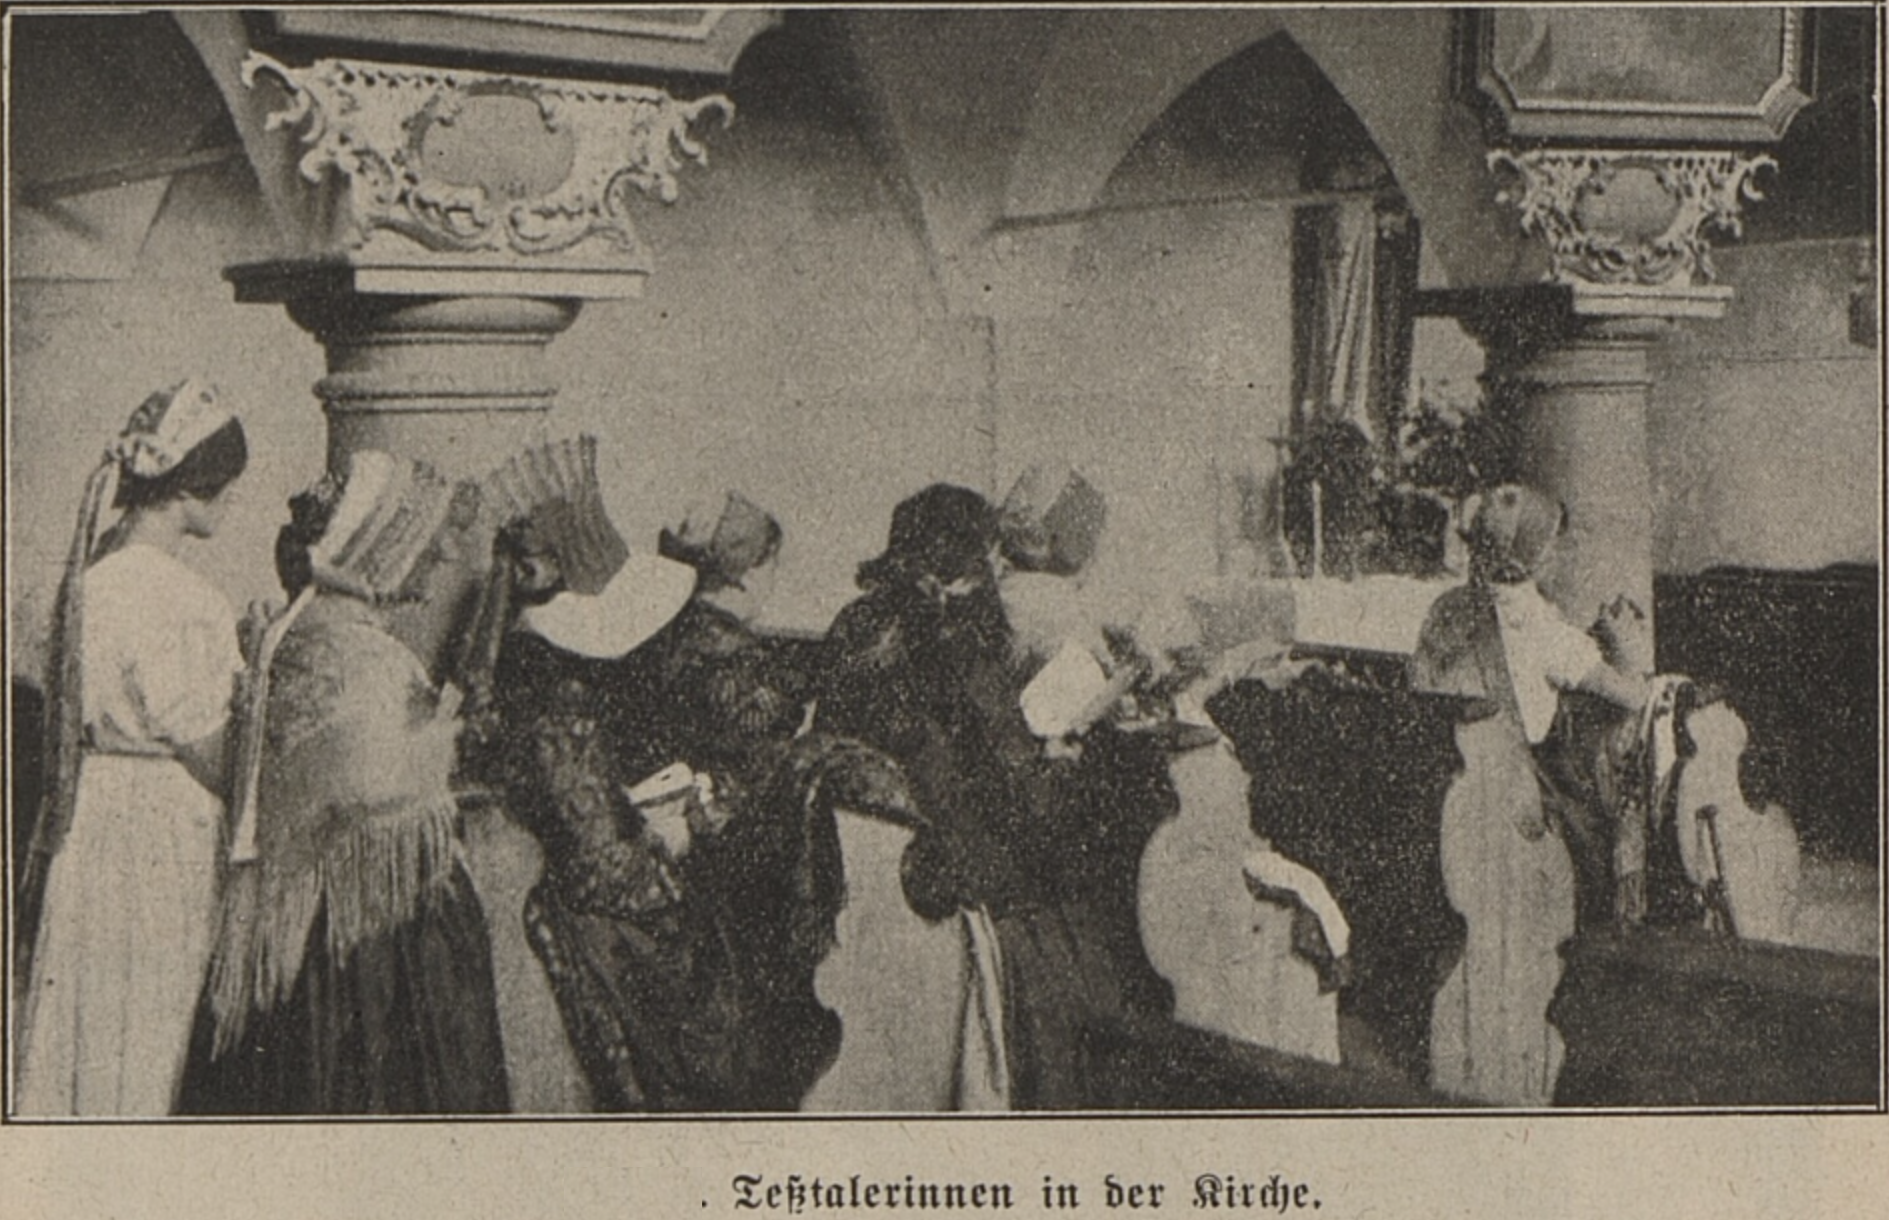 Trachtensonntag in Groß-Ullersdorf im Zuge der Trachtenbelebung wohl 15.8.1930